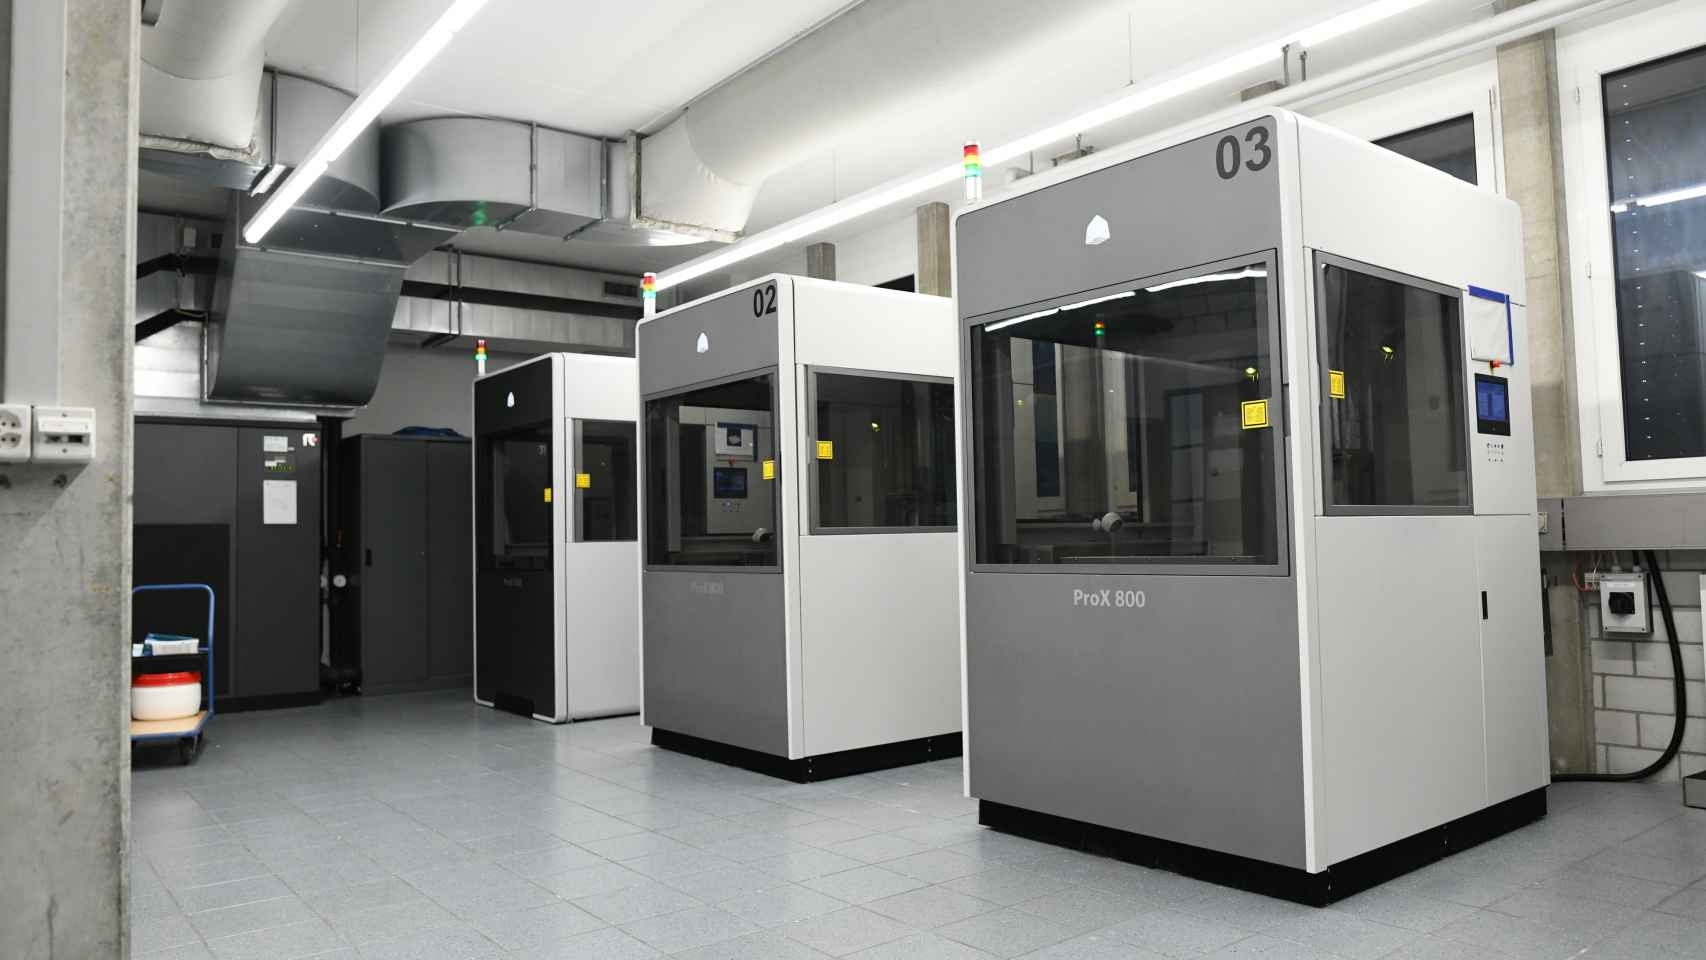 Las impresoras 3D van construyendo capa por capa el elemento deseado con una precisión absoluta.